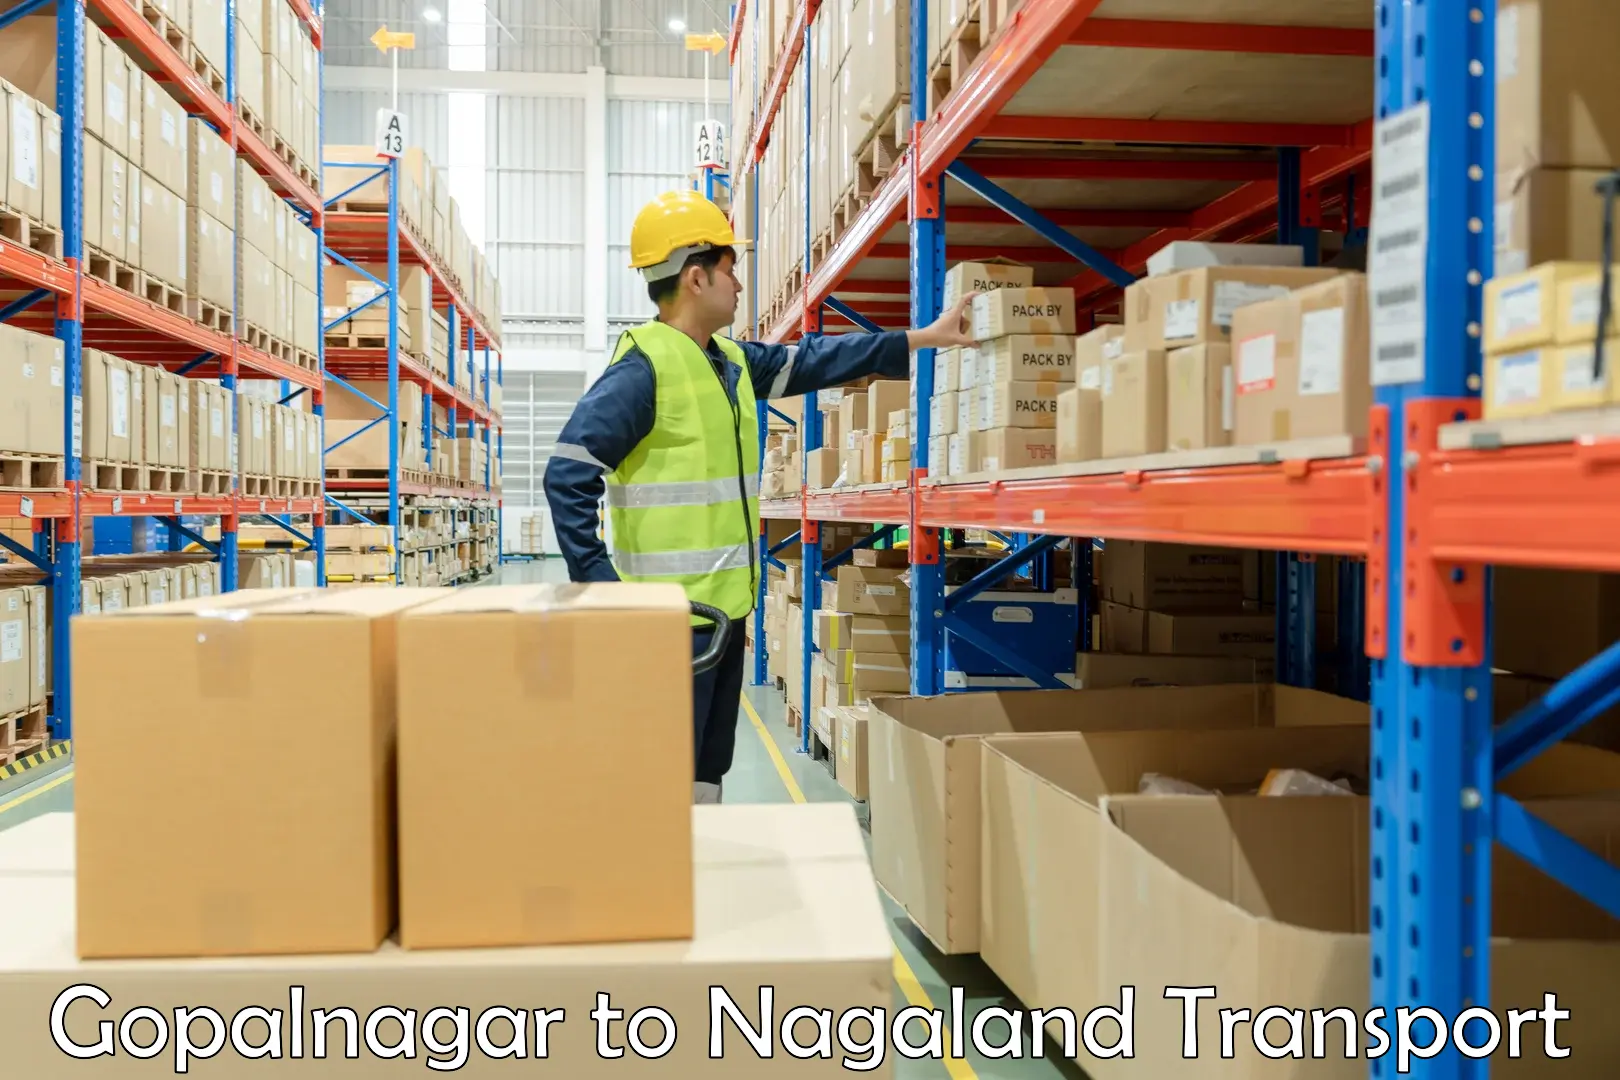 Nationwide transport services Gopalnagar to Longleng